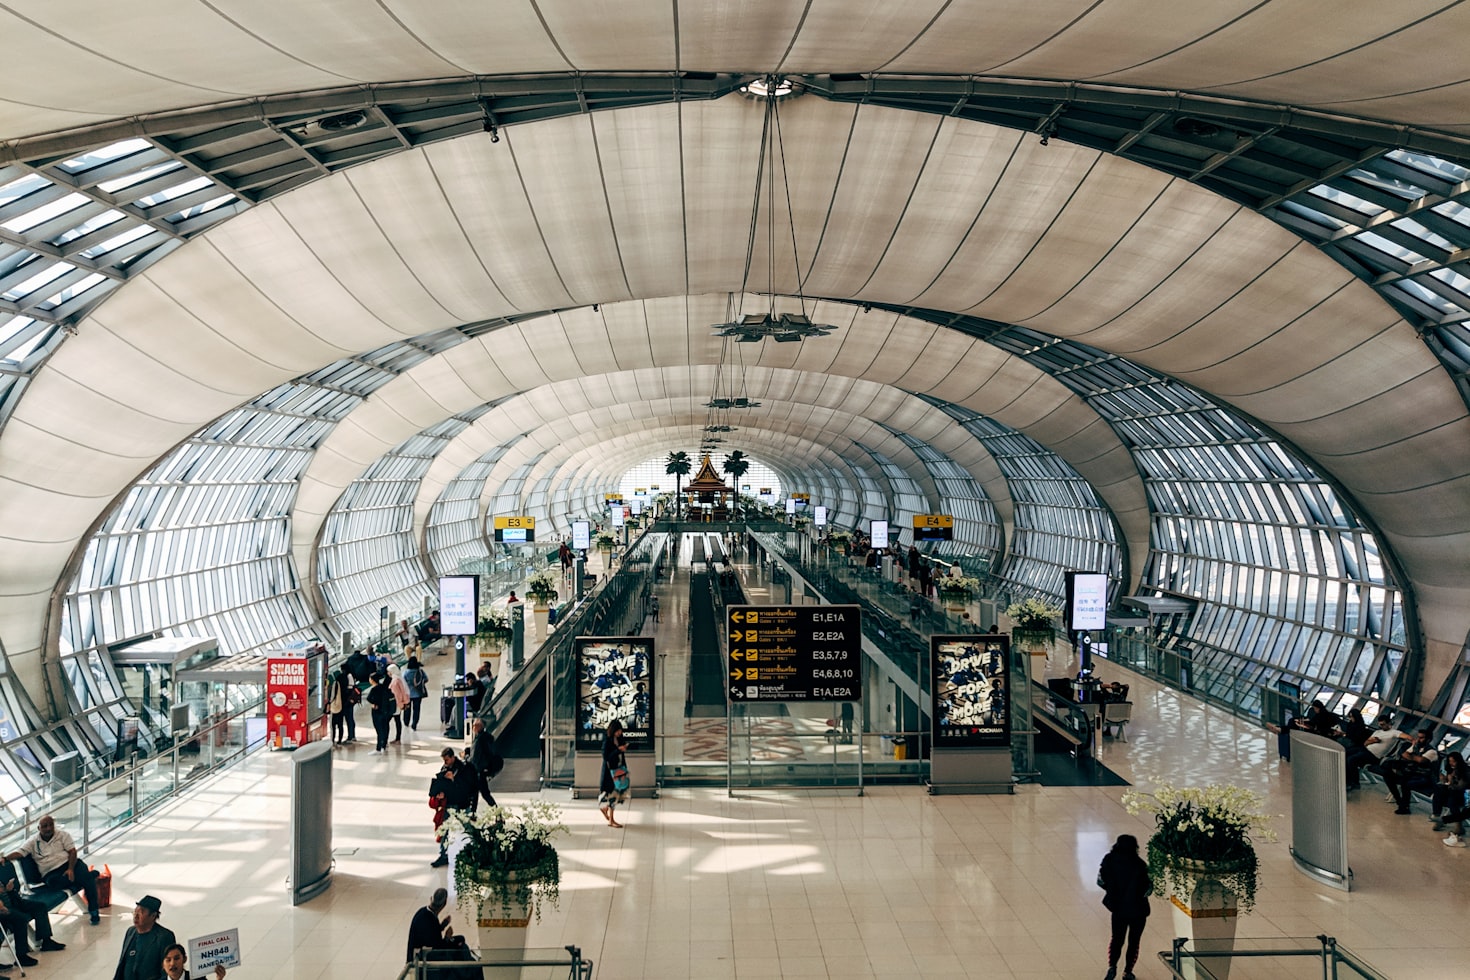 Bangkok Airport 
Image Credits : UnSpalsh